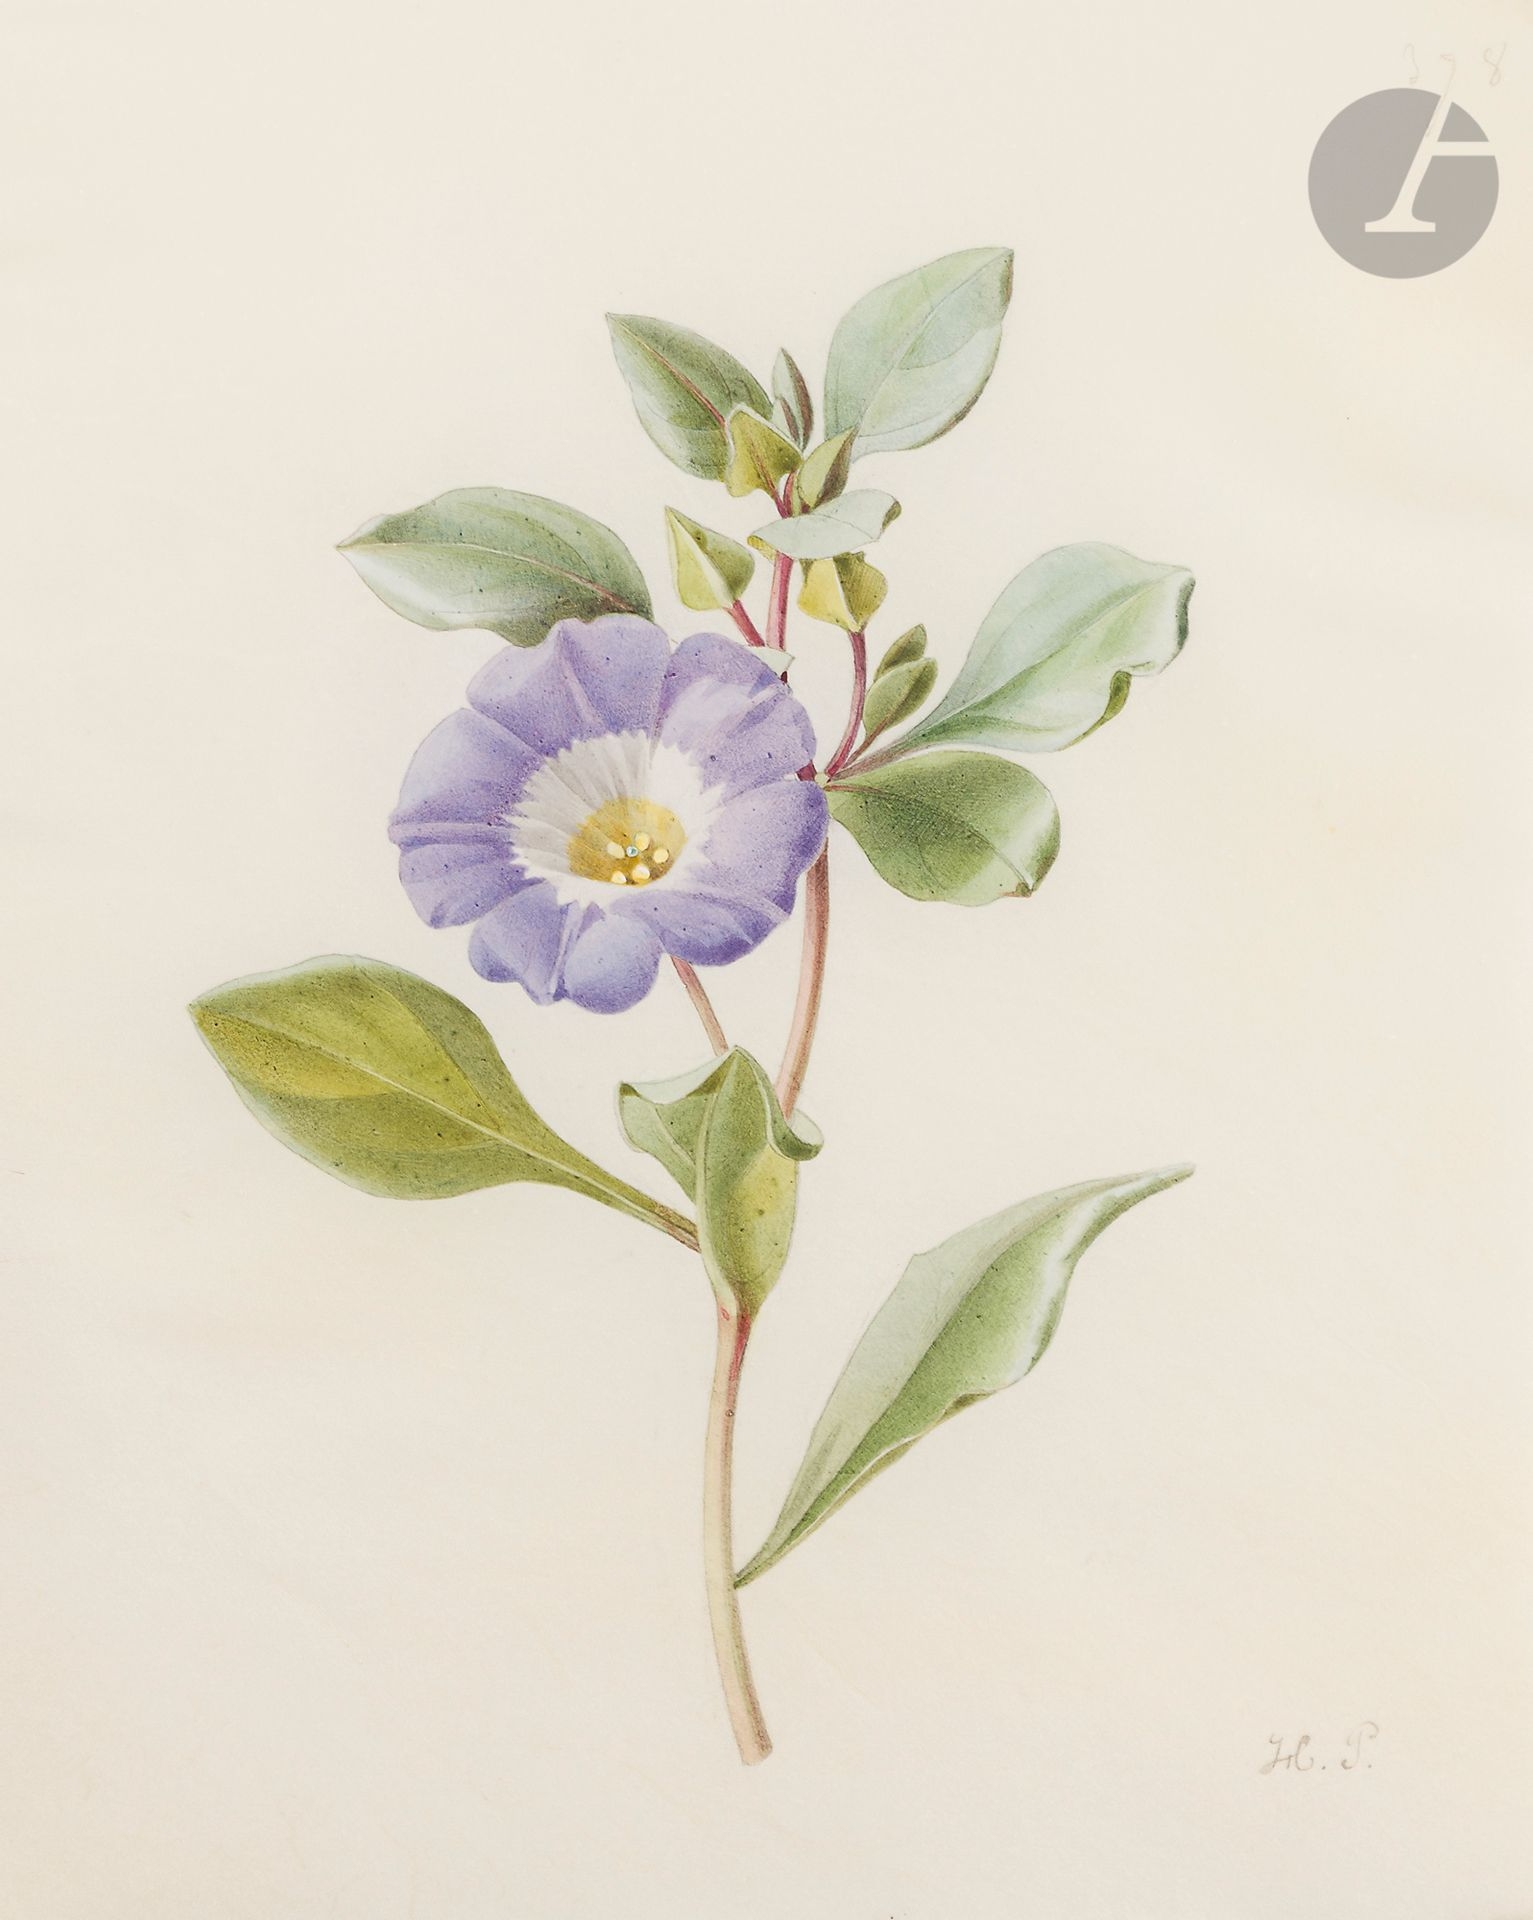 Étude de nolana; études de fleurs : une étude de pervenche et une étude de trèfle d’eau (Menyanthes trifoliata)